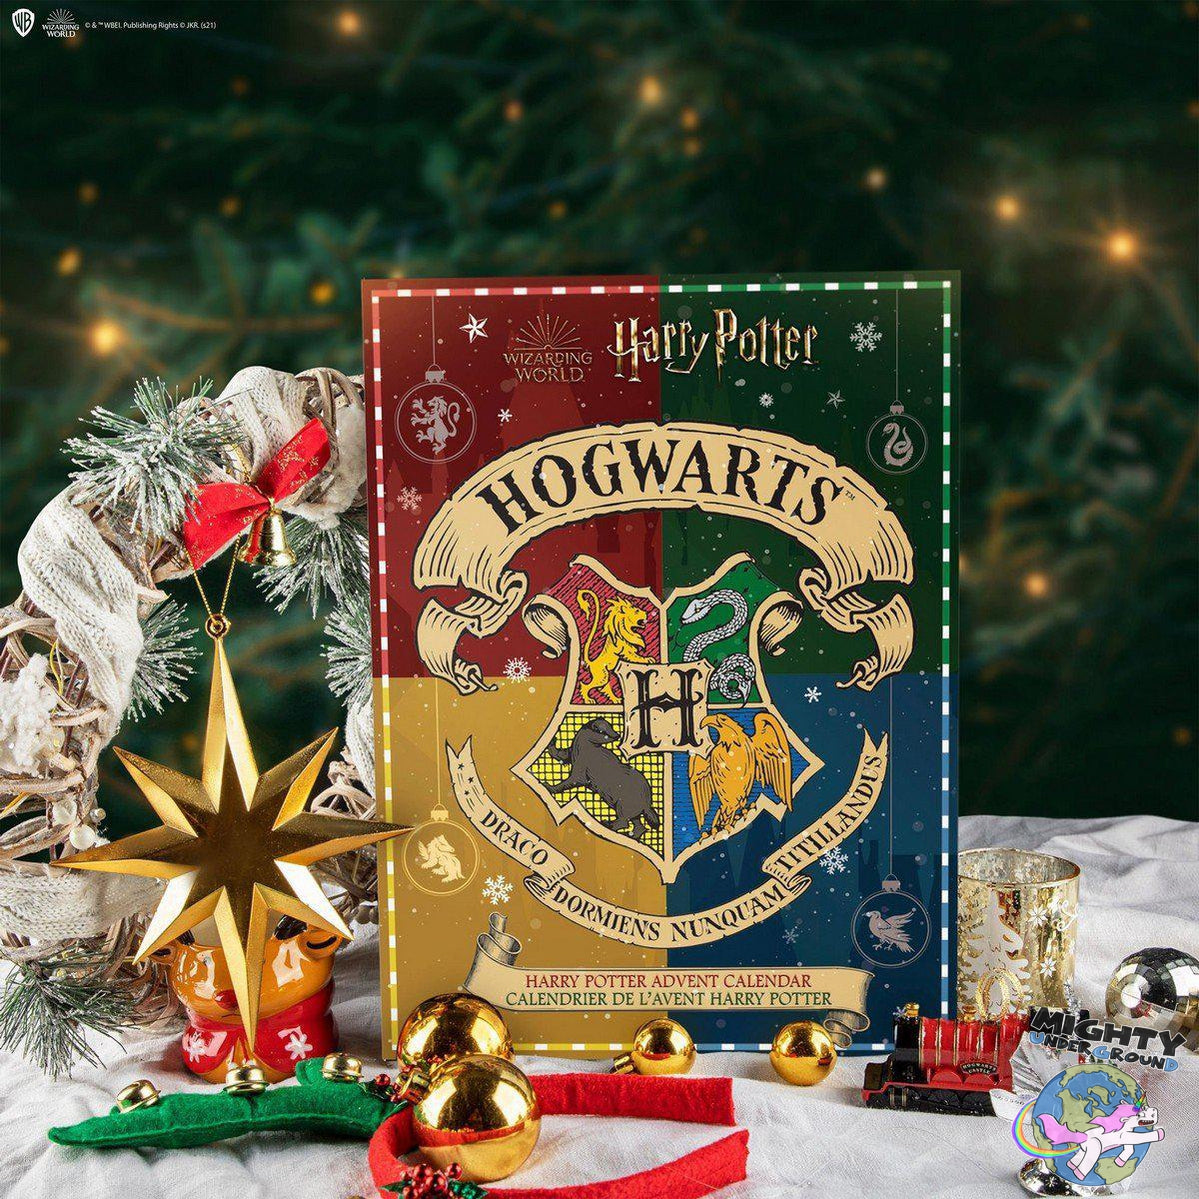 Harry Potter: Adventskalender 2021-Merchandise-Cinereplicas-Mighty Underground